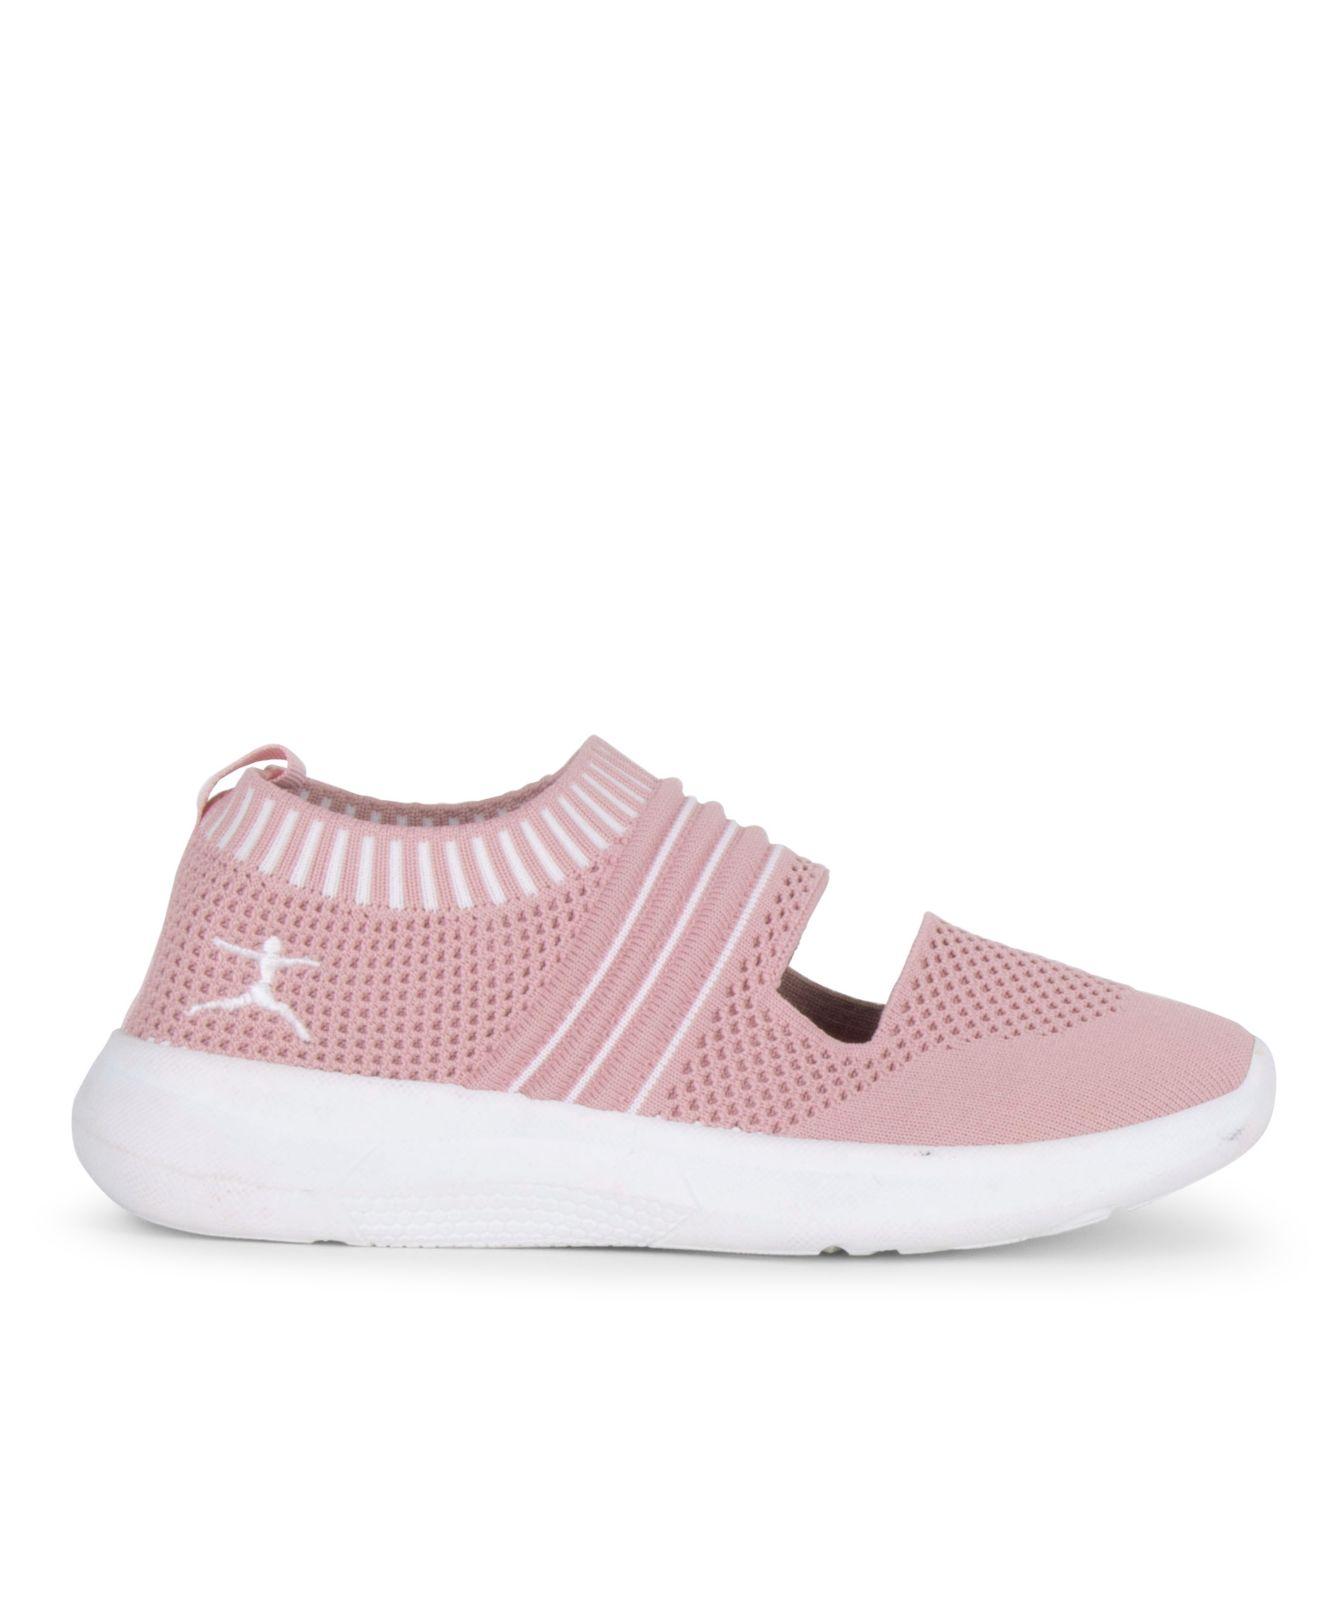 Danskin Synthetic Empower Slip On Stretch Knit Sneaker in Pink - Lyst